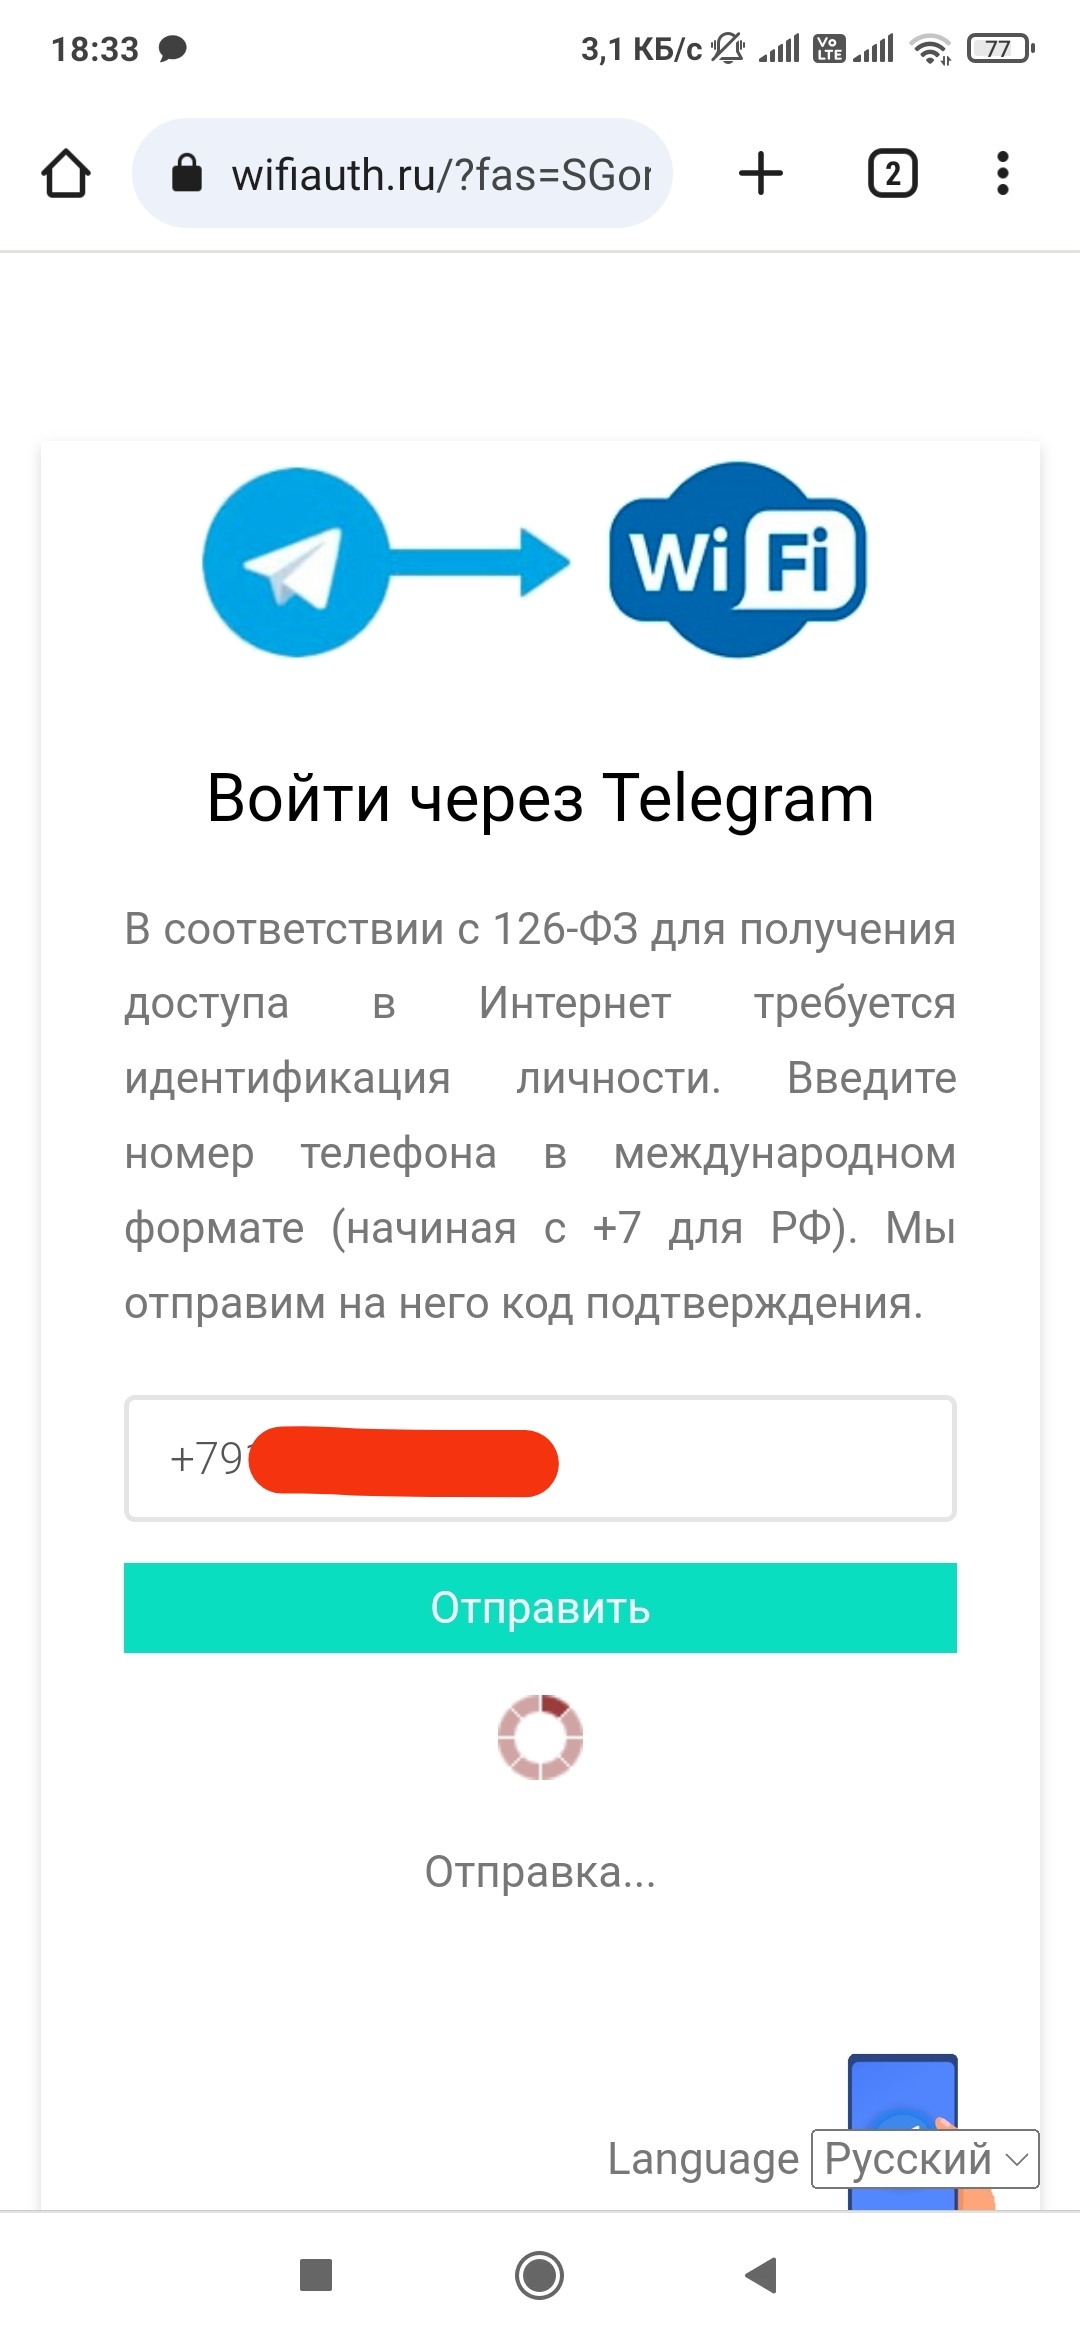 Телеграмм установить бесплатно на телефон русском языке без регистрации фото 65